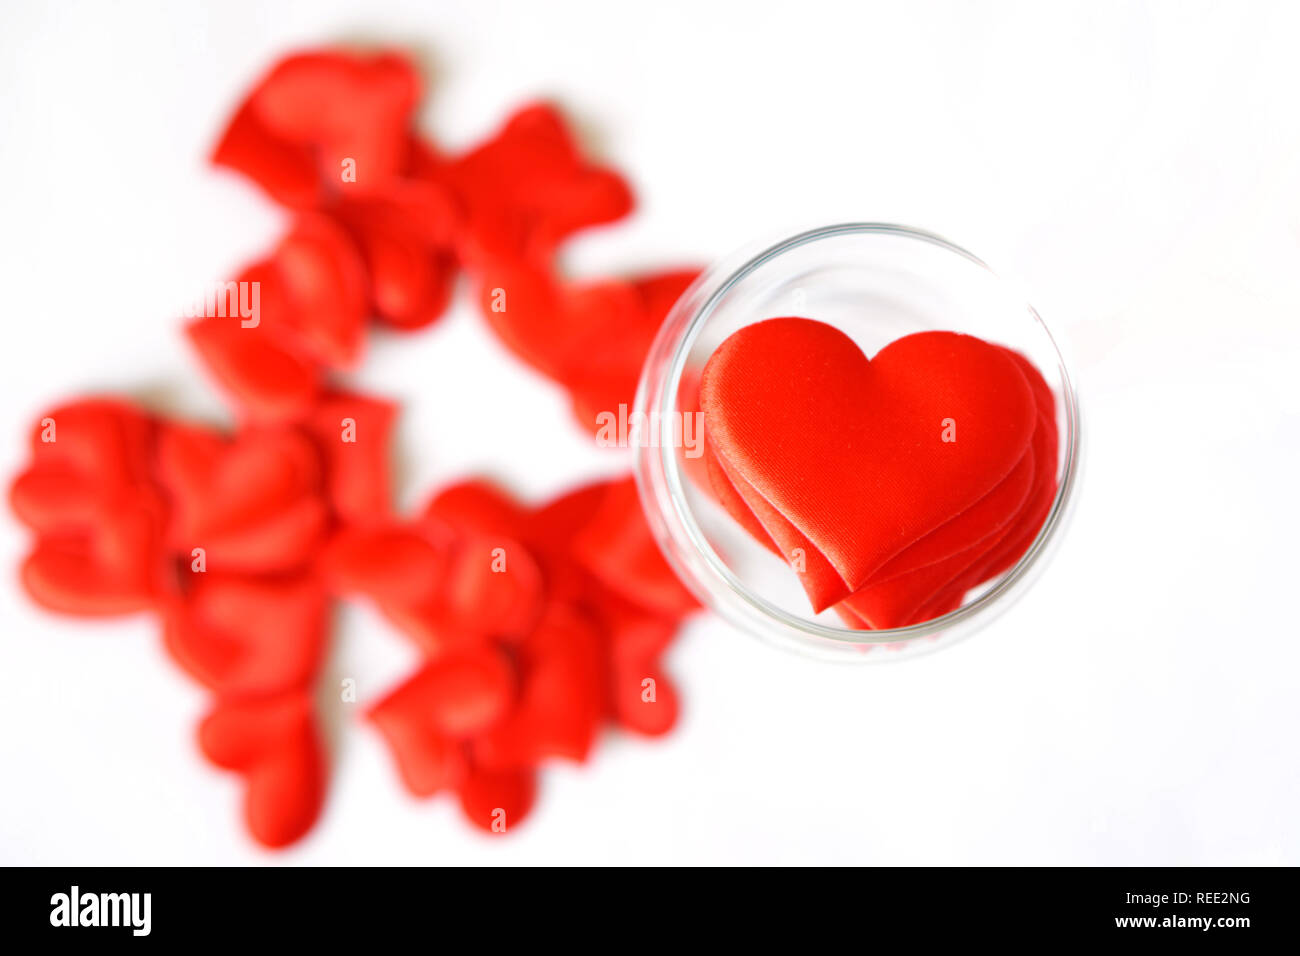 Viele rote Herzen in einem durchsichtigen Glas auf einem weißen Hintergrund. Valentinstag. Herzlichen Glückwunsch zum Valentinstag. Stockfoto